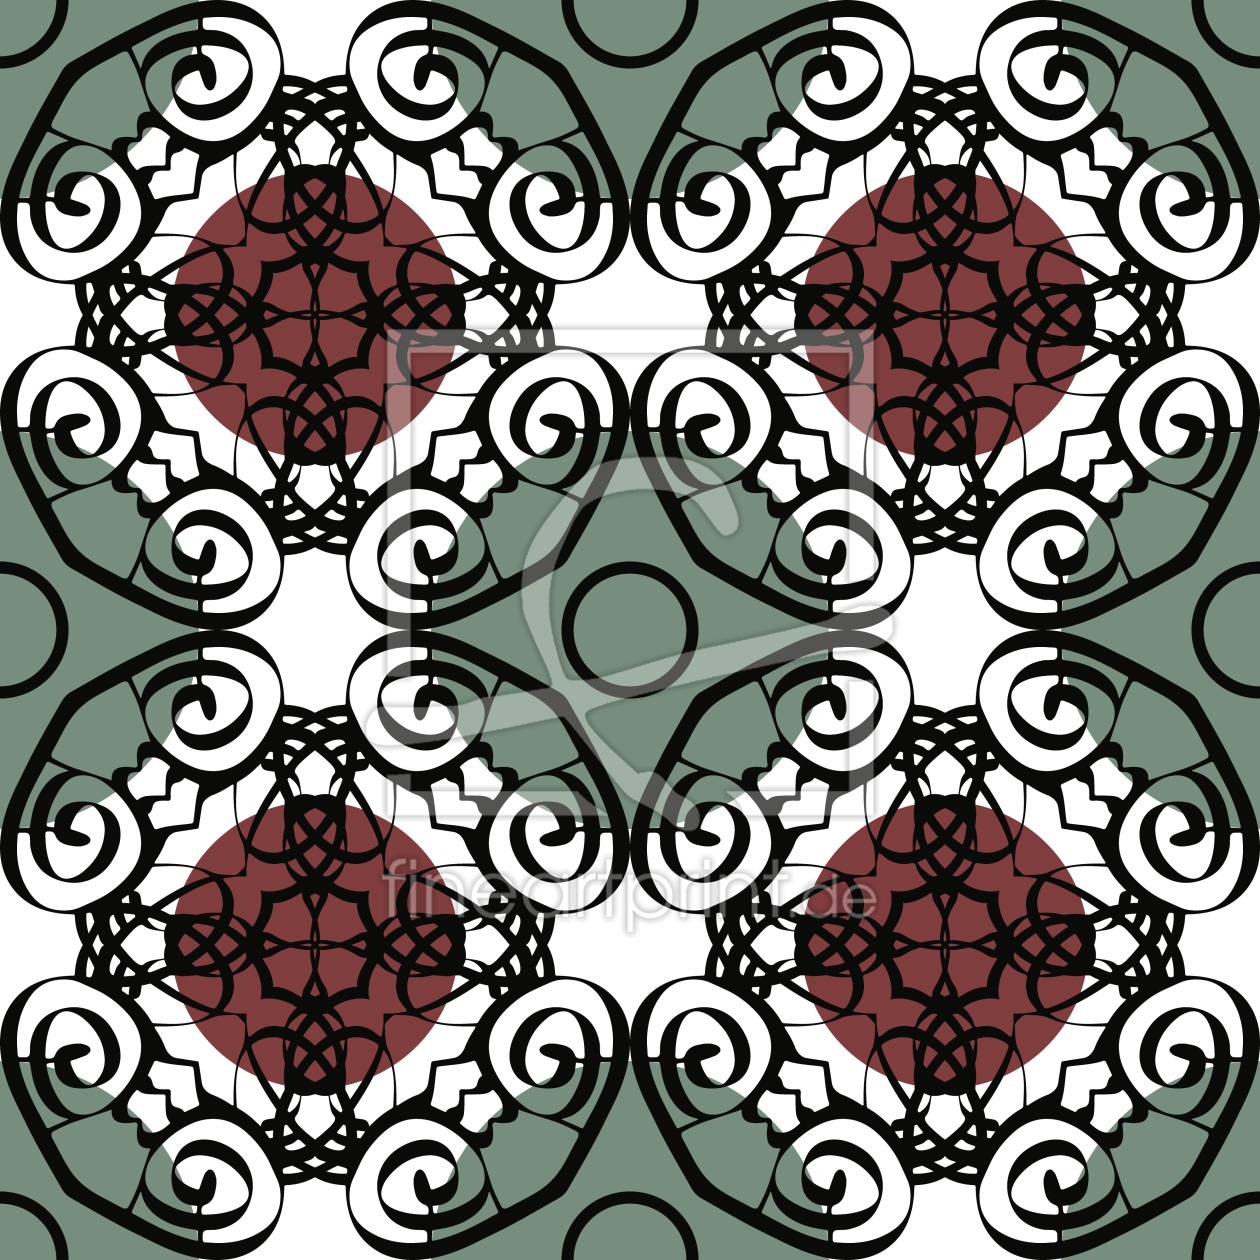 Bild-Nr.: 9006716 Opulenz In Kreisen erstellt von patterndesigns-com